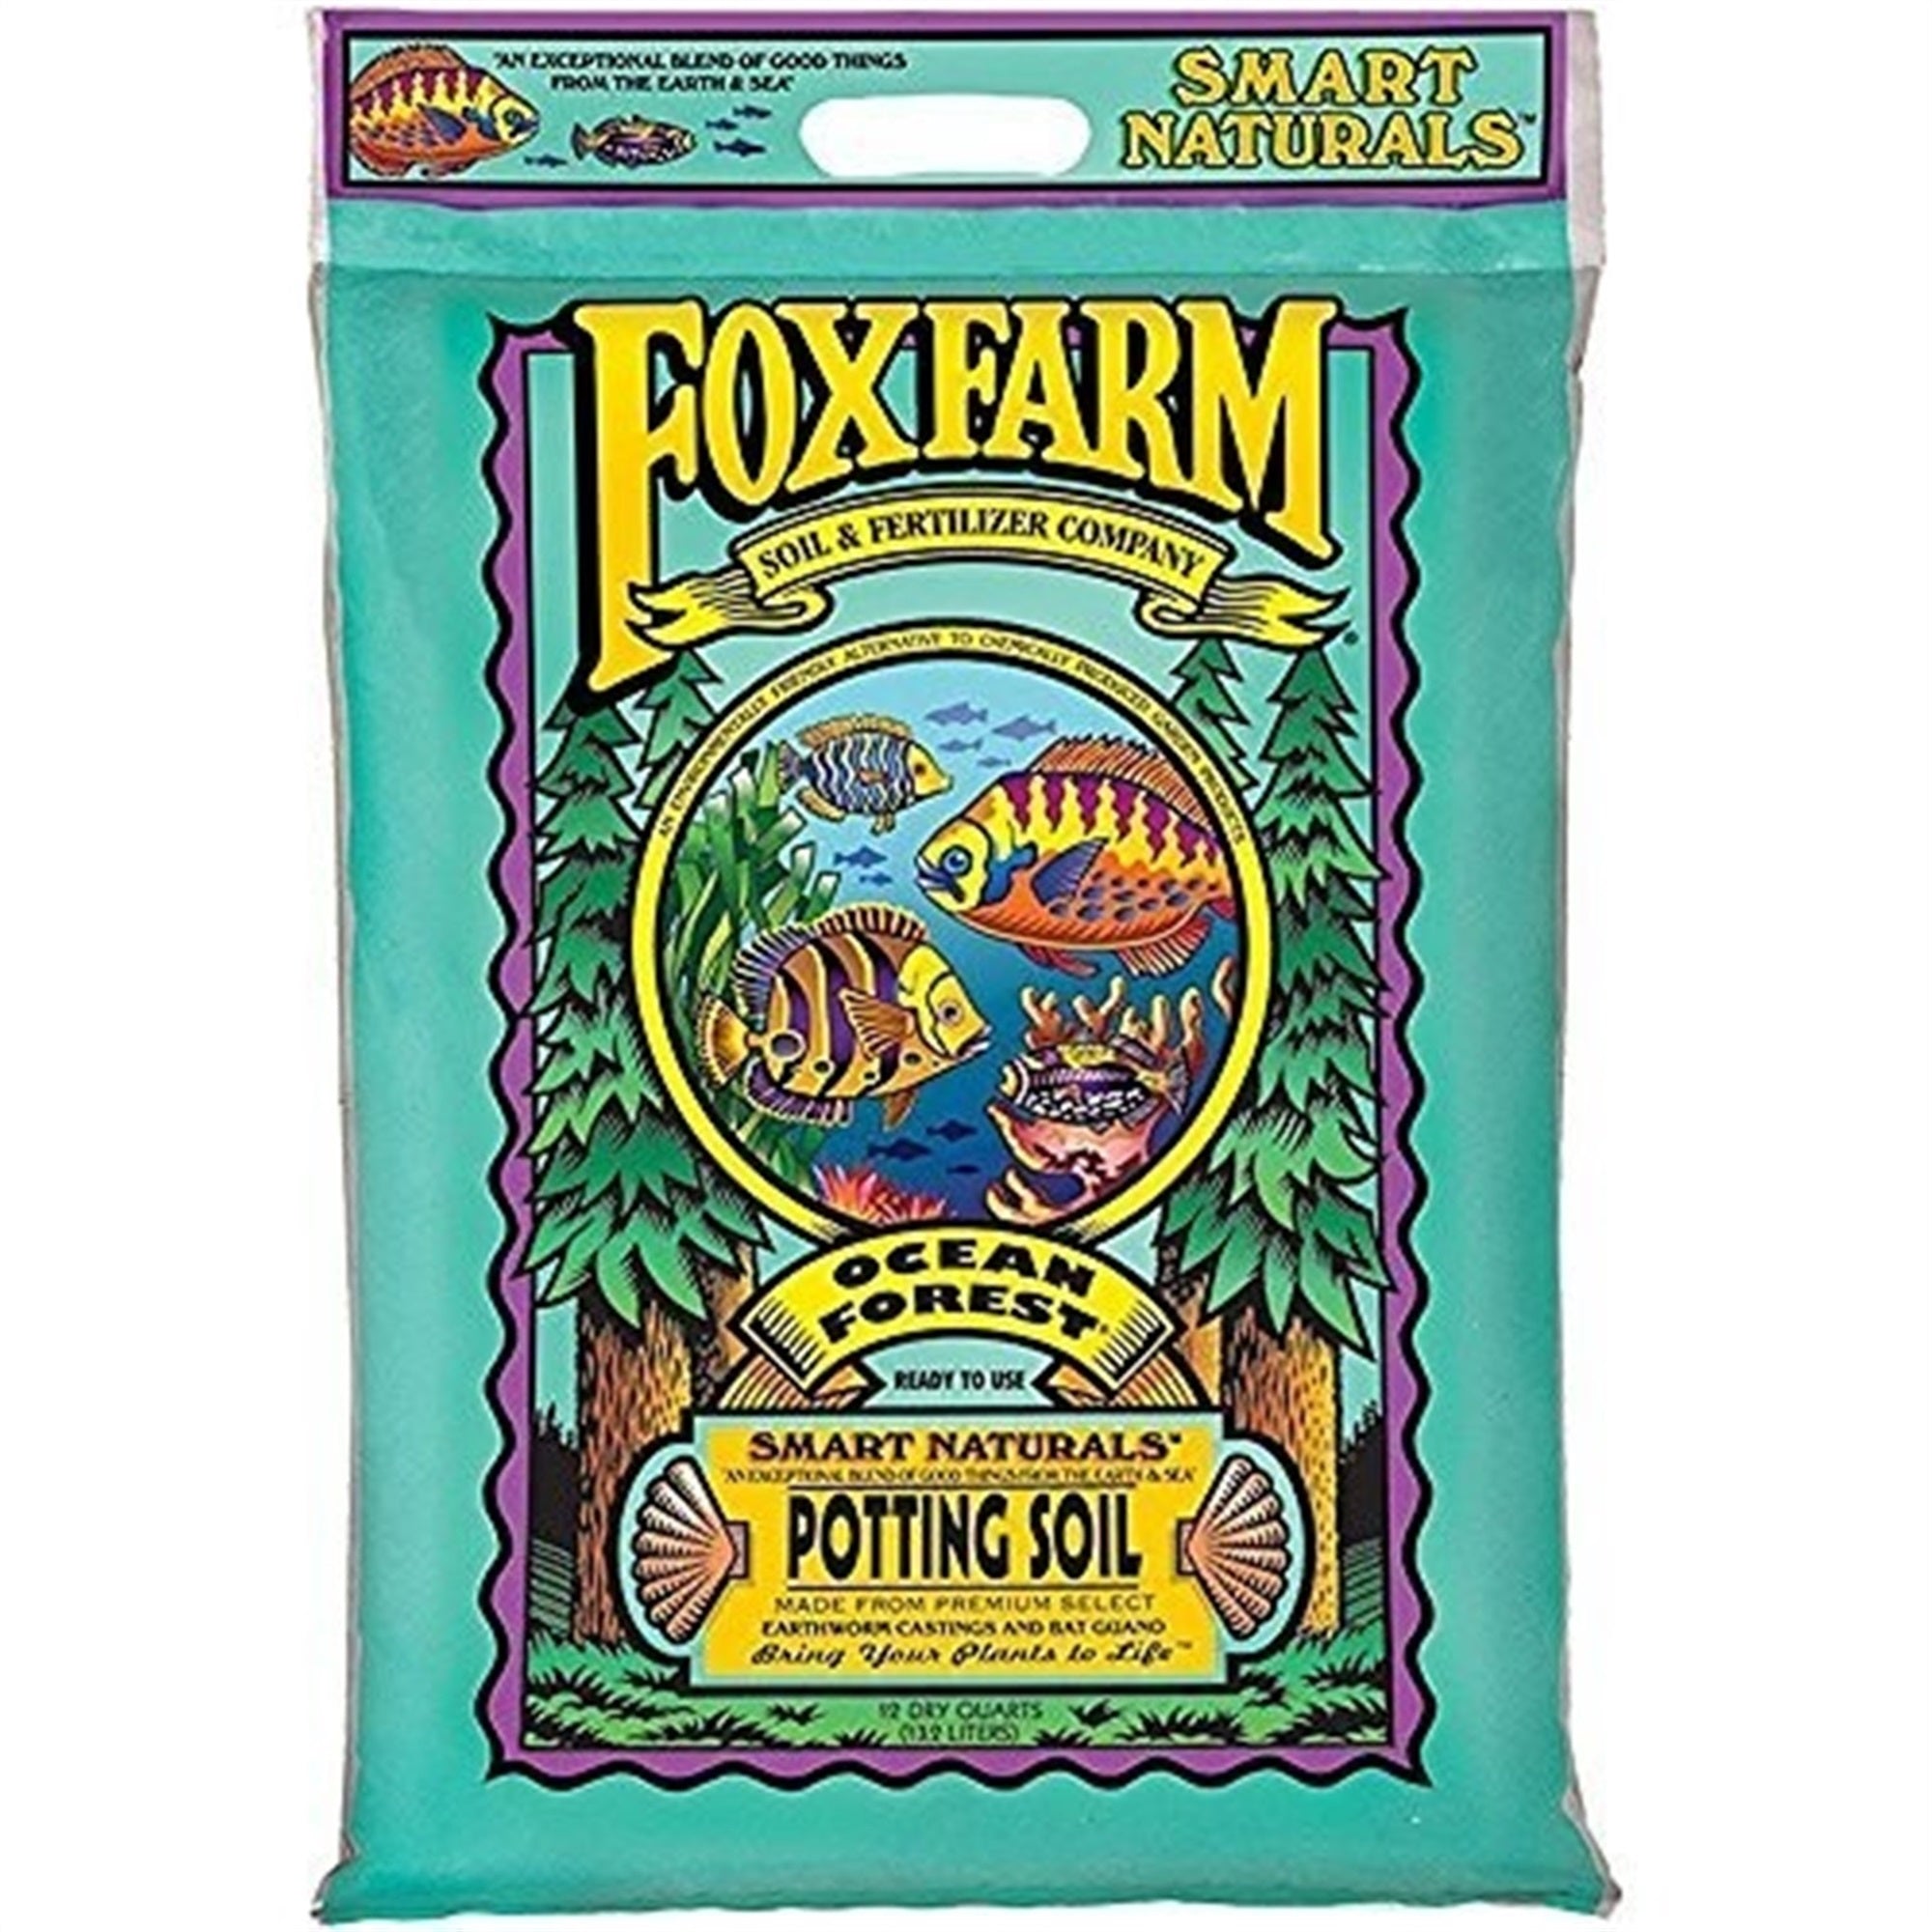 FoxFarm Ocean Forest Potting Soil, 12-Quart (Pack of 1)